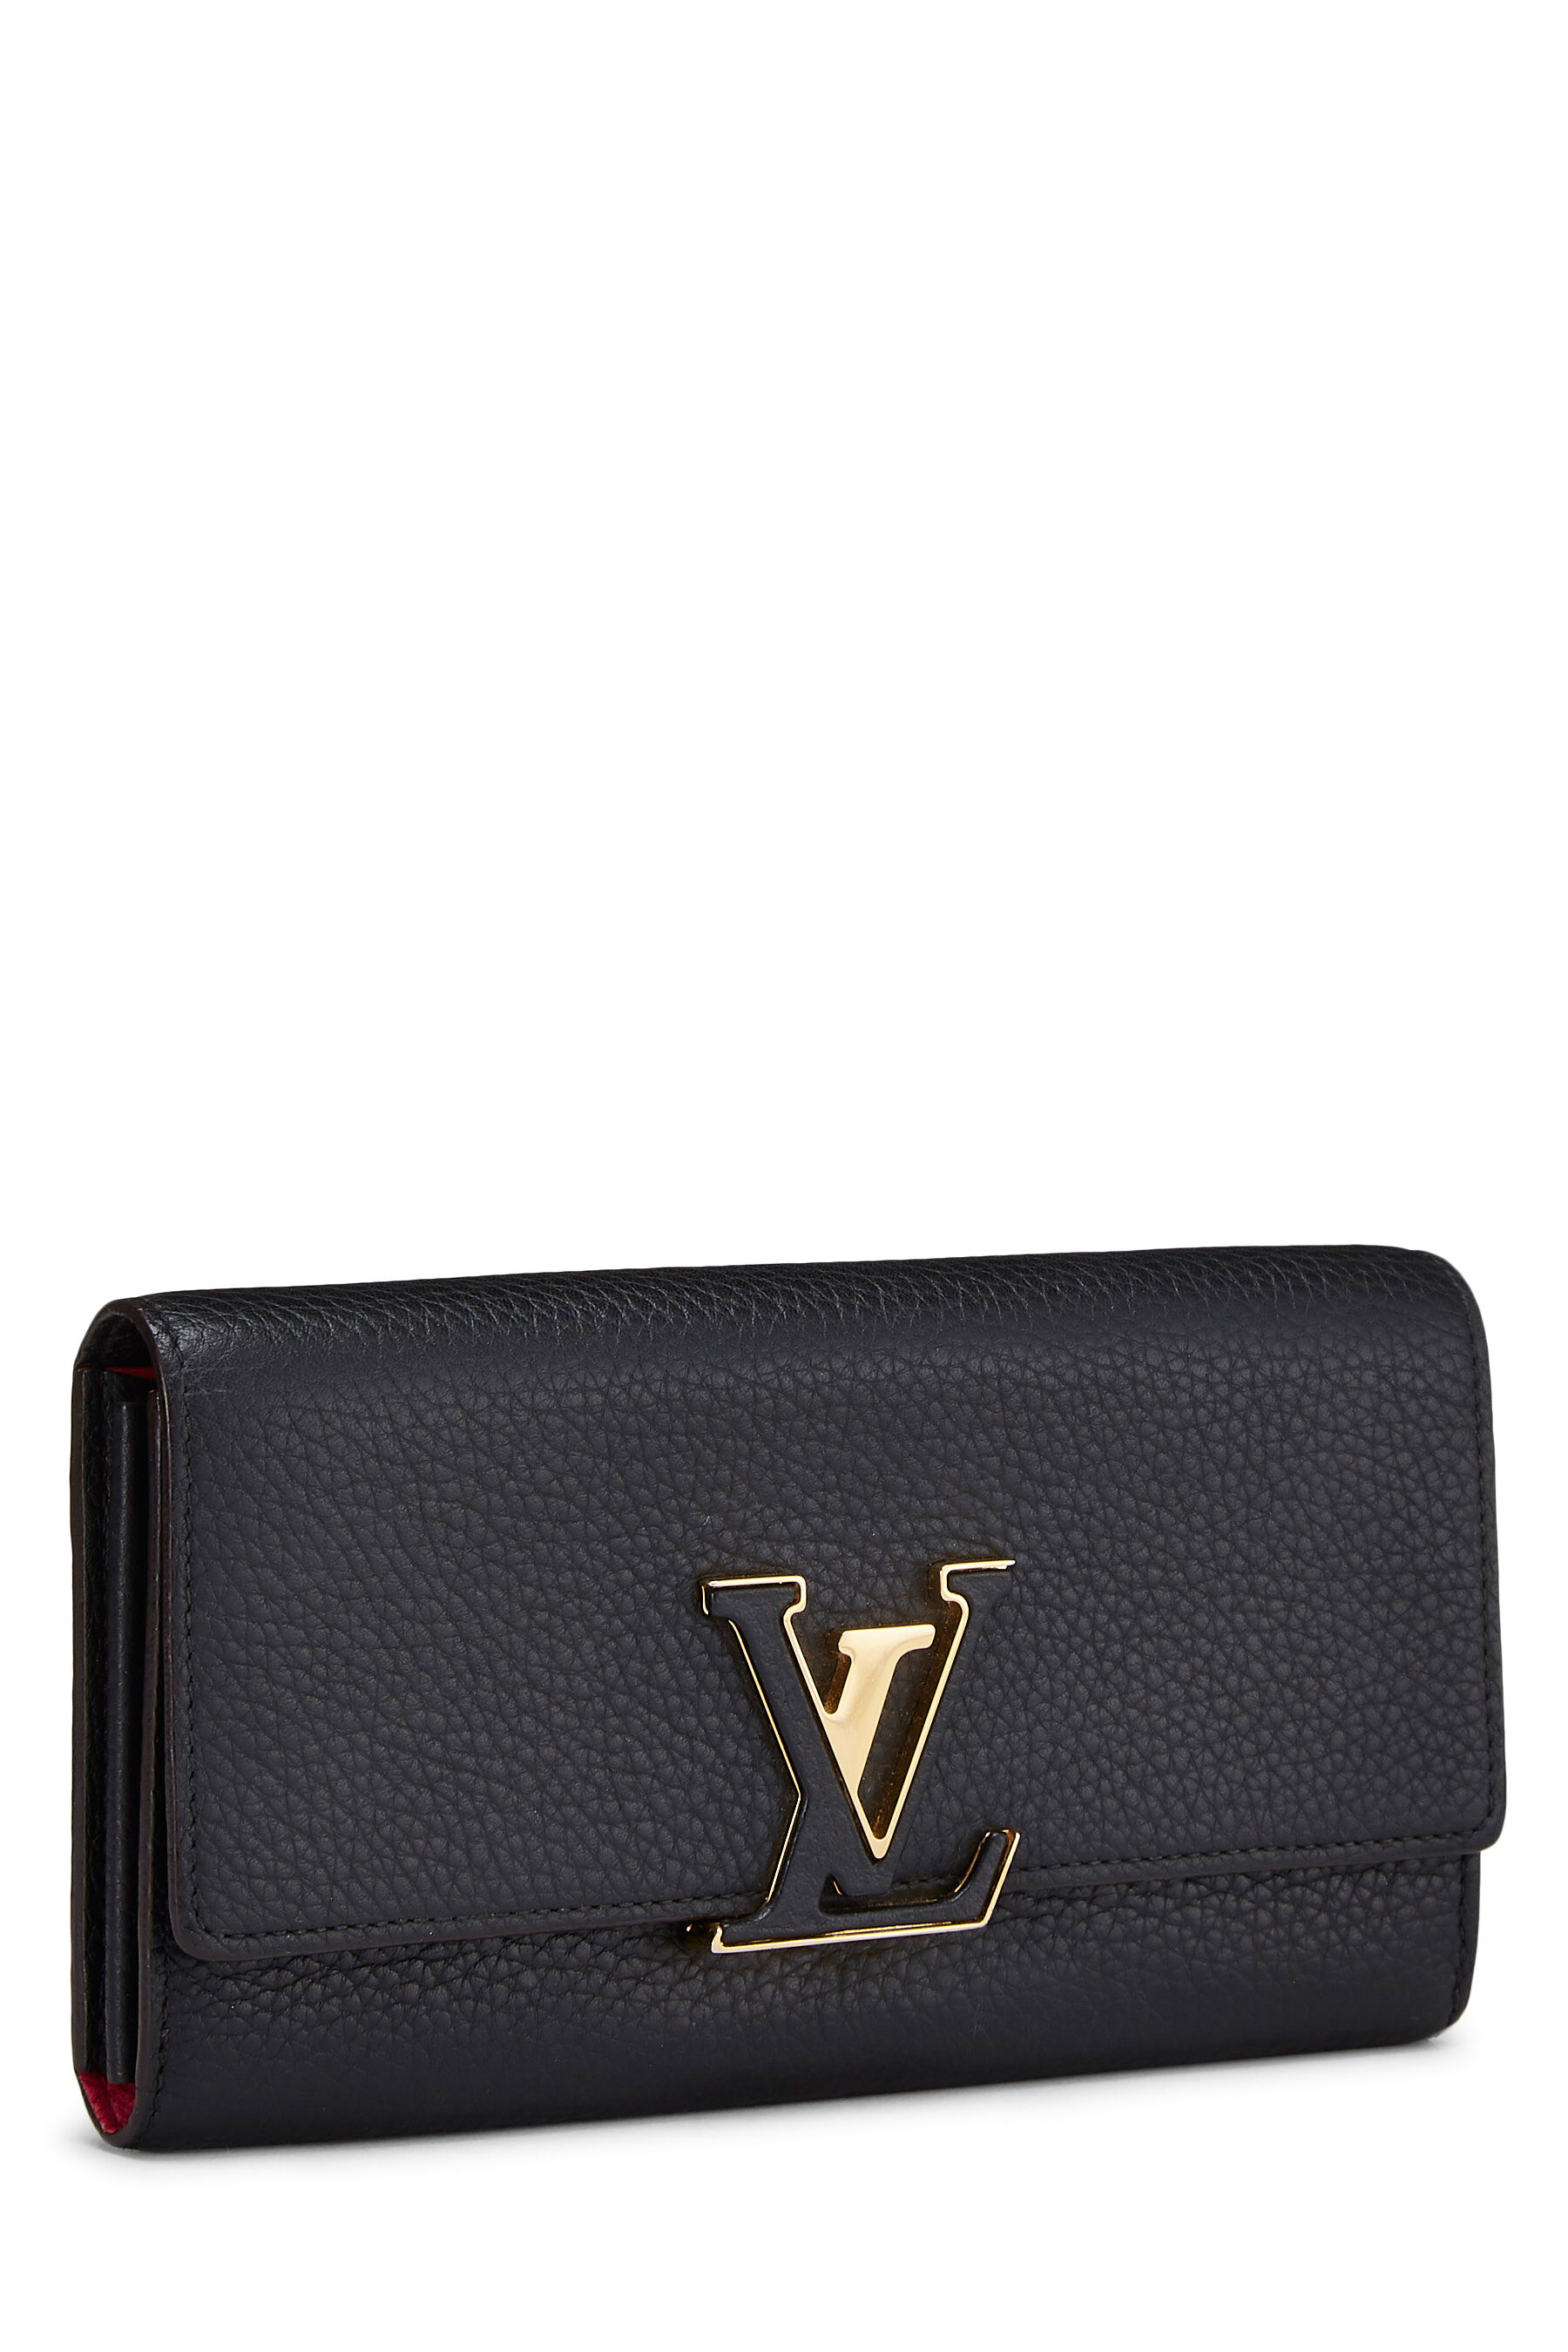 Louis Vuitton Black Taurillon Leather Capucines Wallet